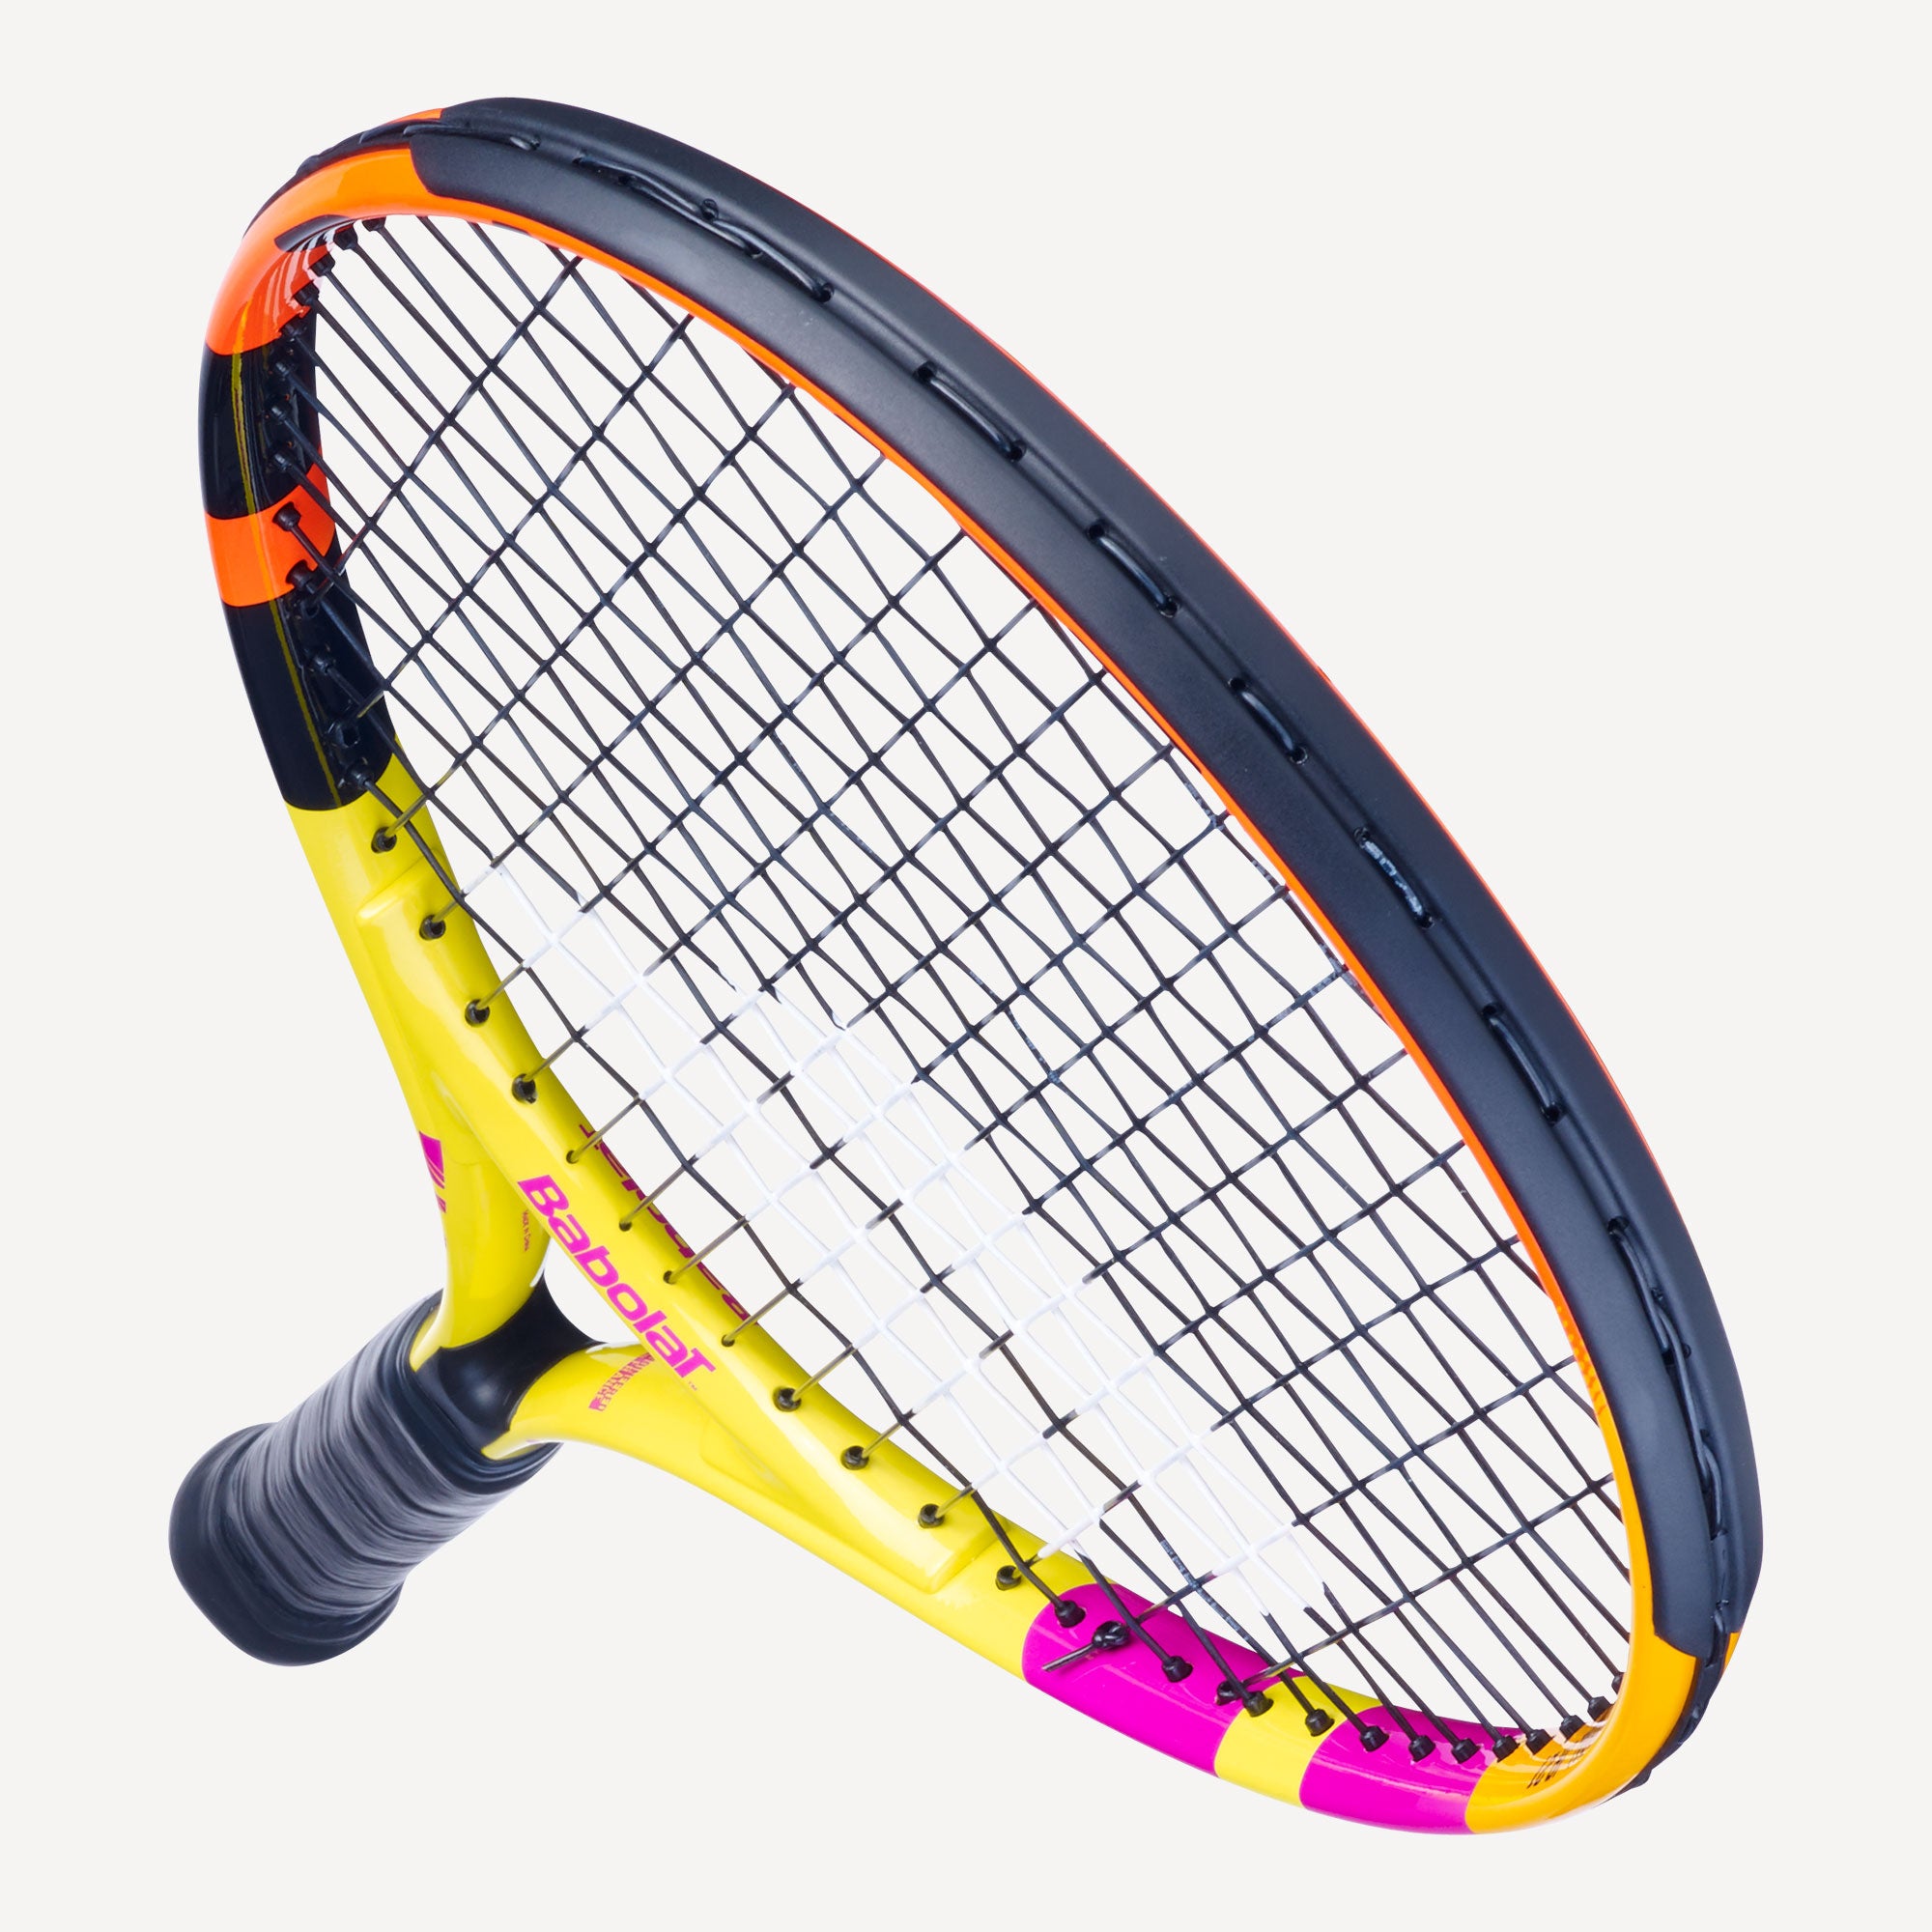 Babolat Rafa Nadal 21 Junior Tennis Racket 5